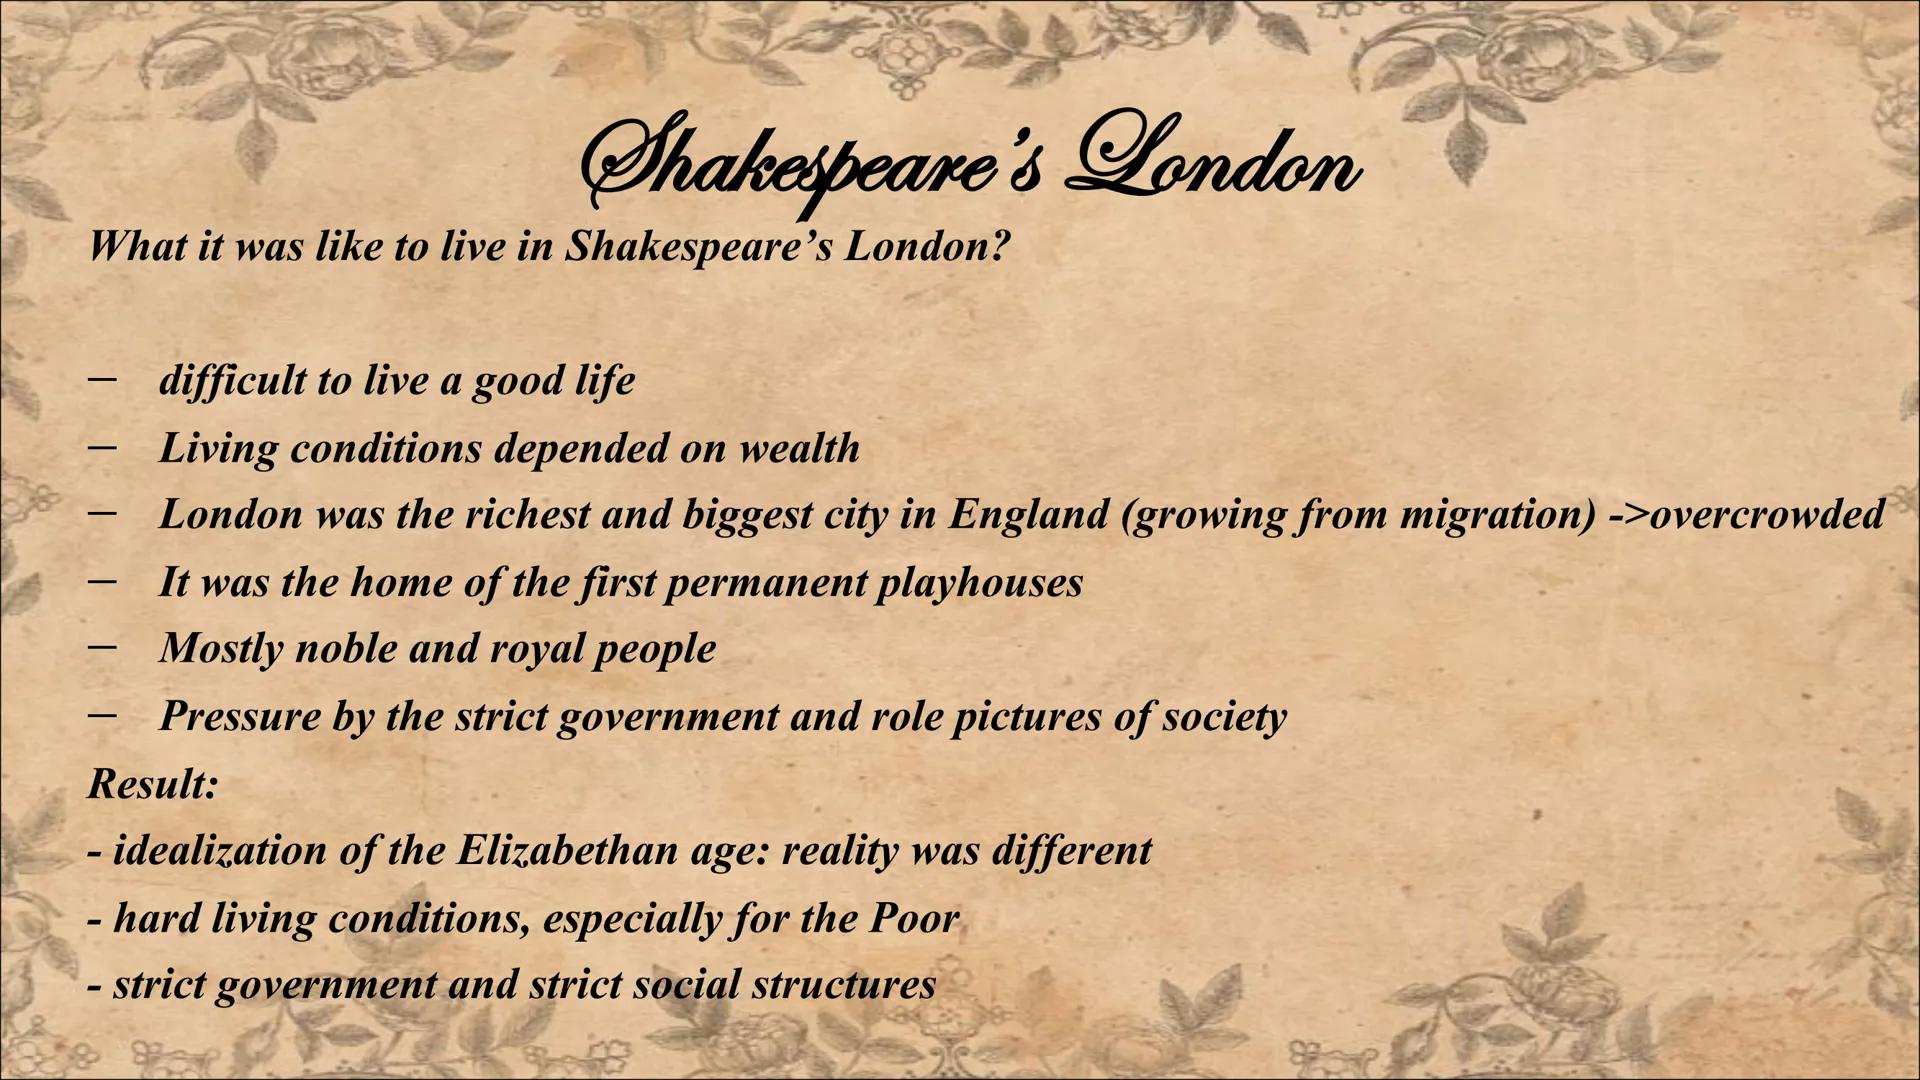 -William Shakespeare-
Historical background 1564-1616
William
Werſenem Schatzper General information
Society
Есопоту
Religion
Politics
Table